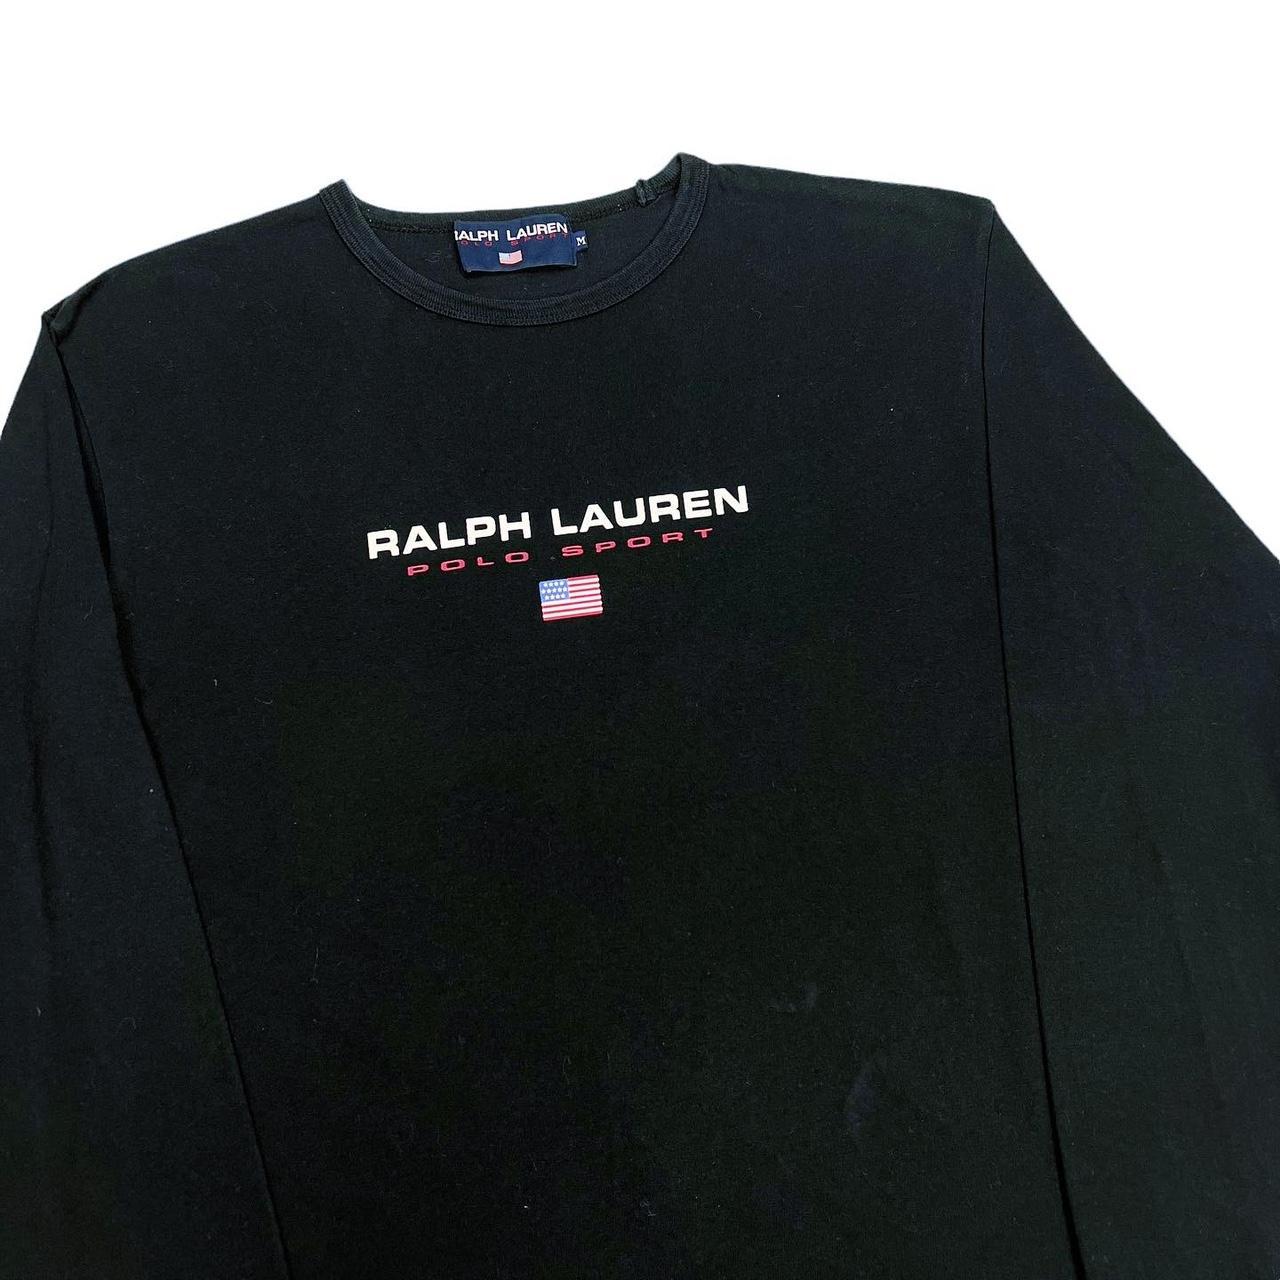 Vintage Polo Sport Ralph Lauren Long Sleeve T-shirt... - Depop